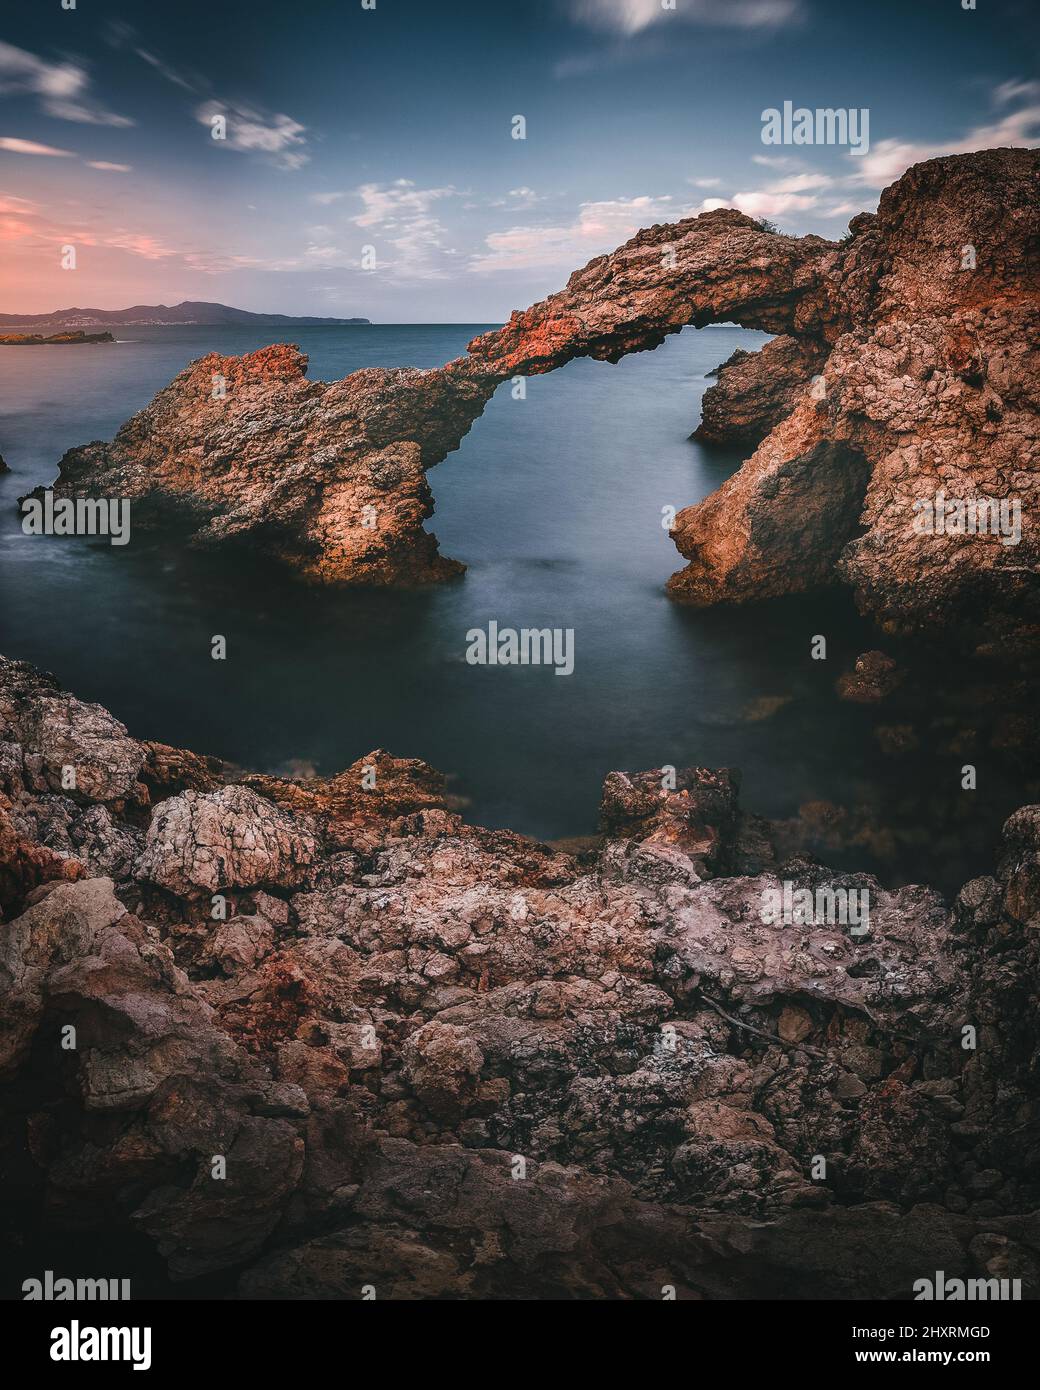 Formation de roches près de la mer à l'Escala, Espagne Banque D'Images